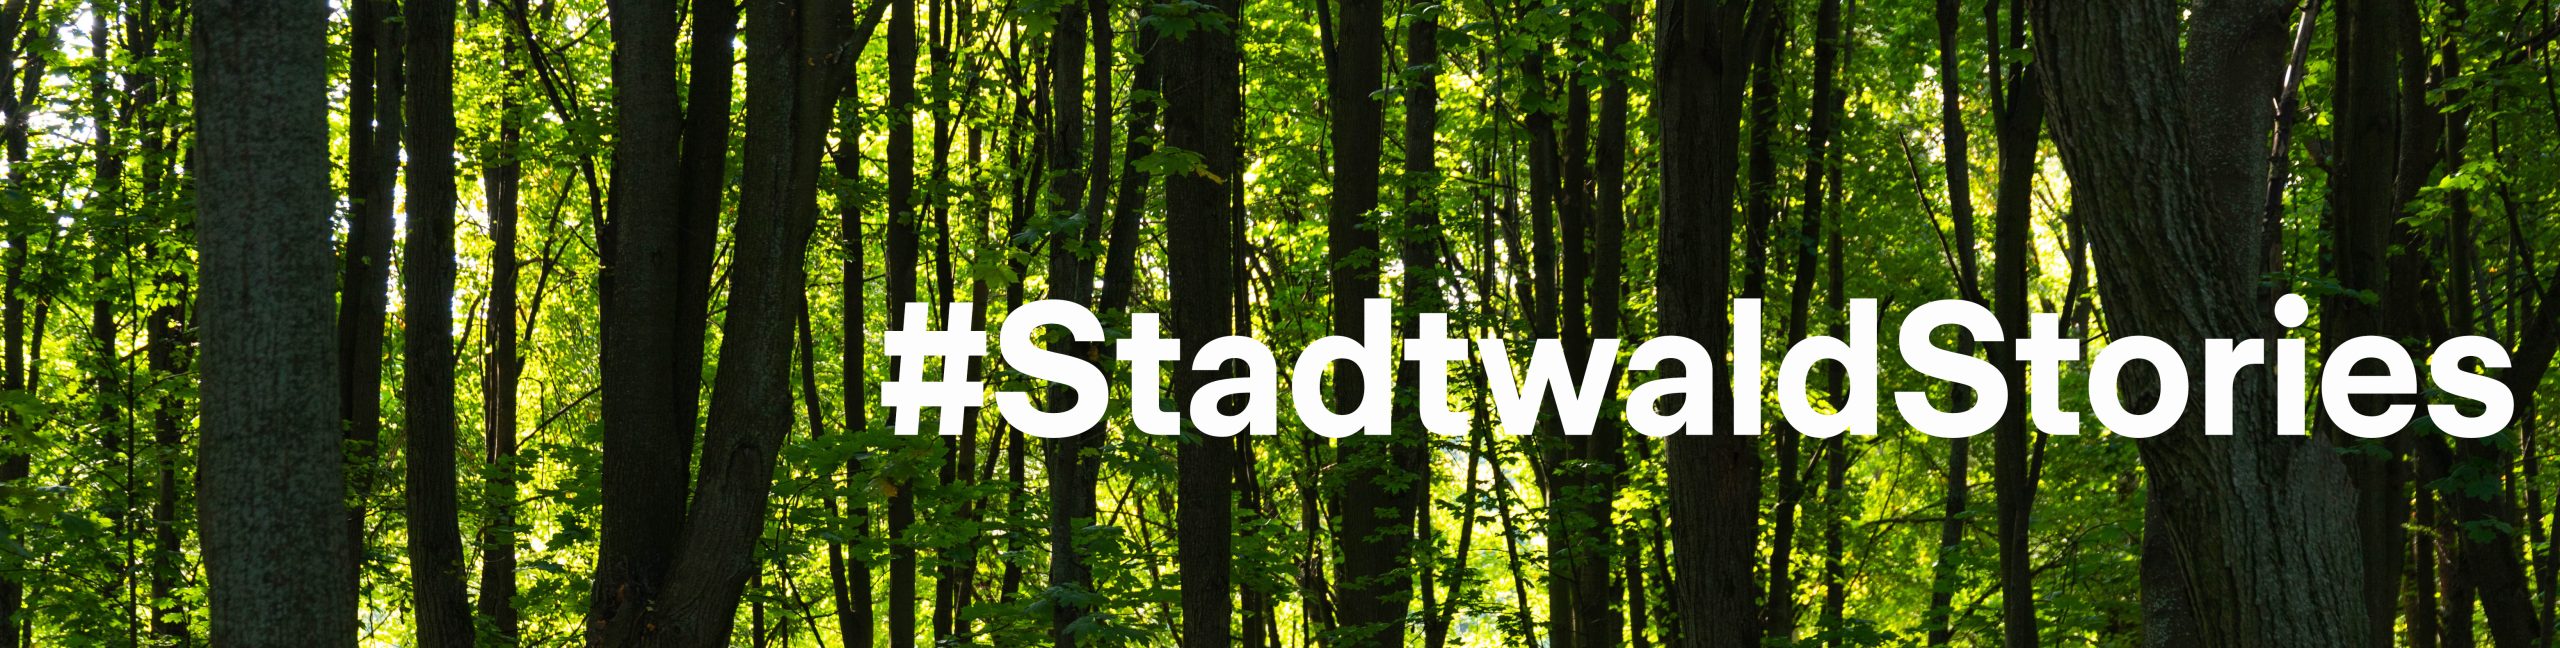 Stadtwaldmanagement in Krisenzeiten – ein Interview